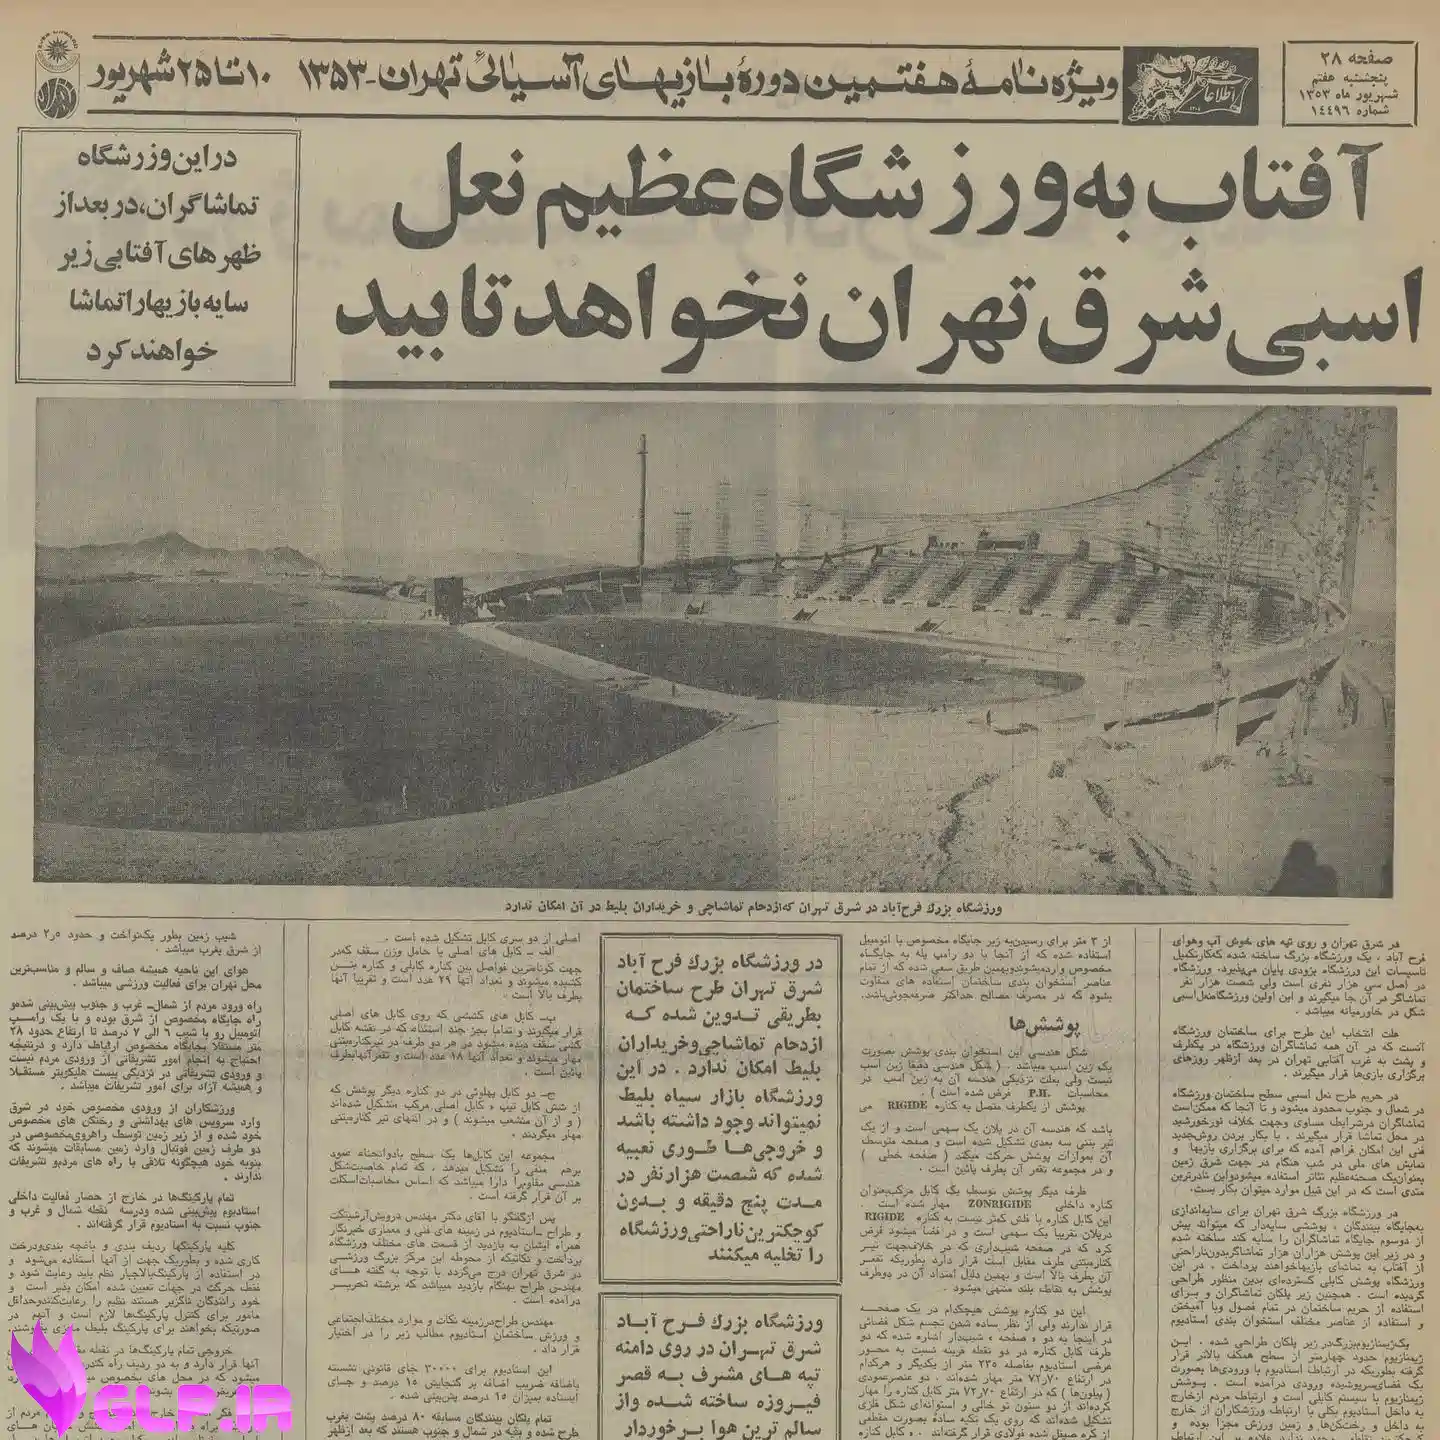 سالروز زمانی که تهران میزبان هفتمین دوره المپیک آسیایی بود